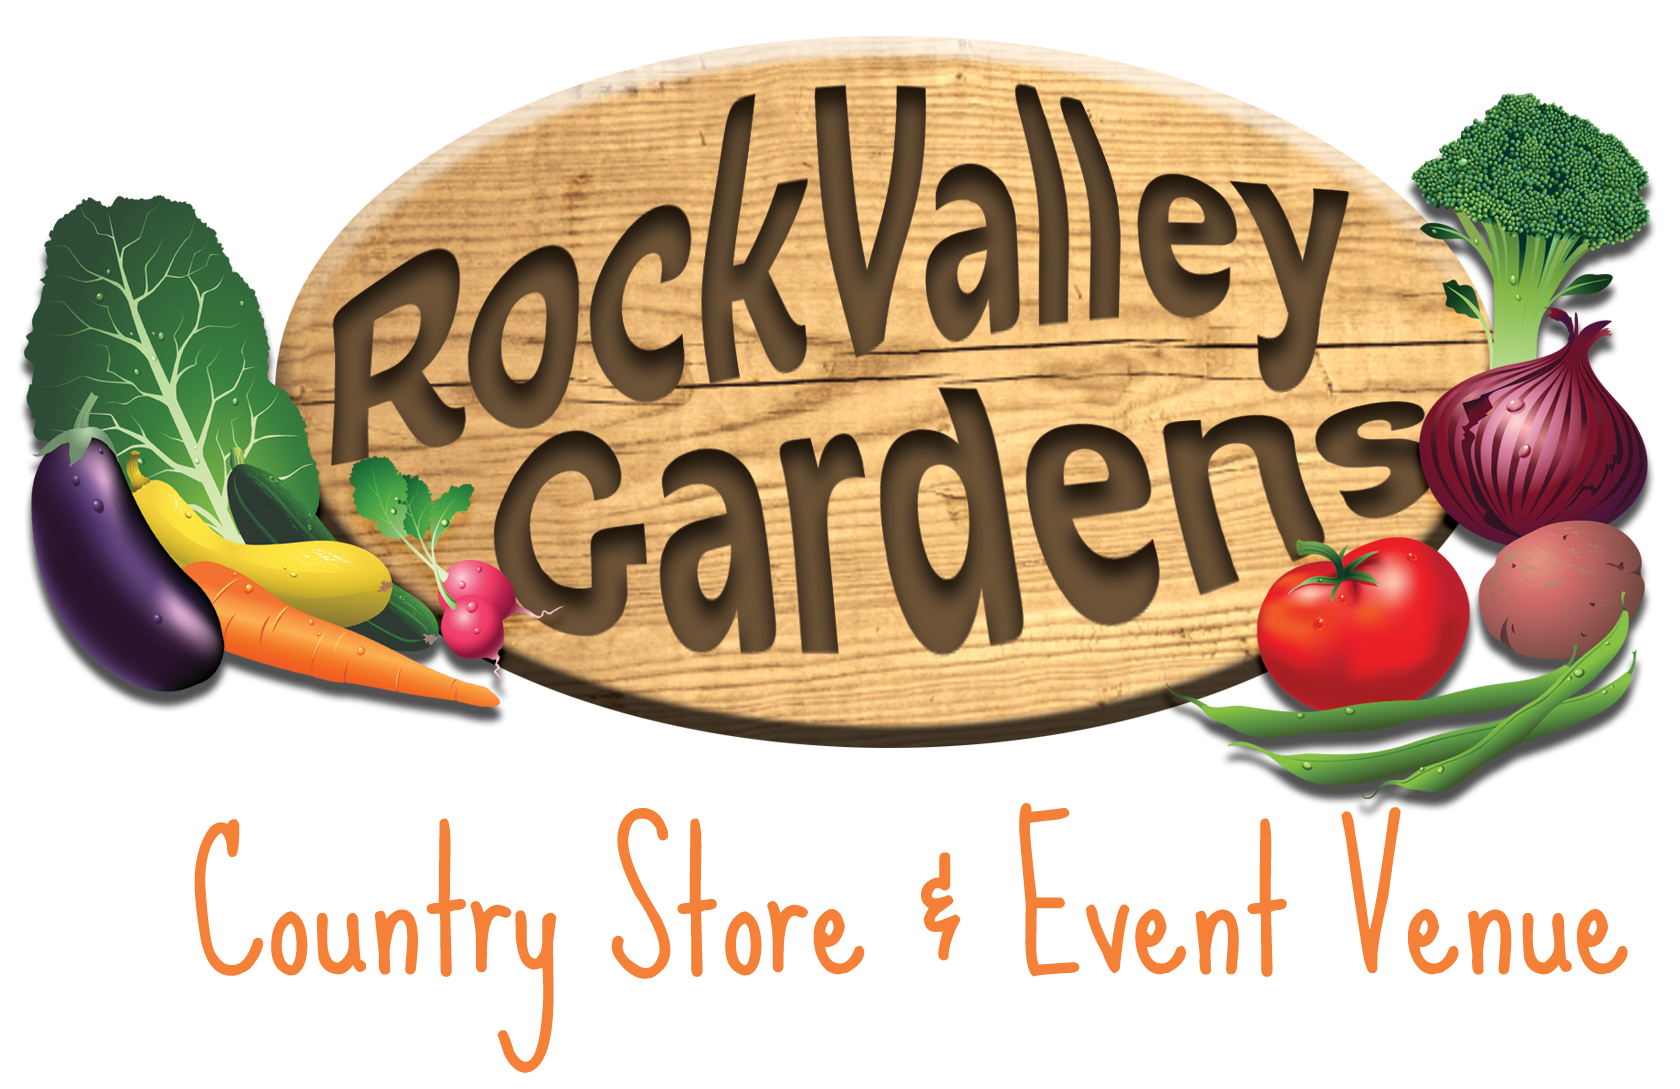 RockValley Gardens & Event Venue